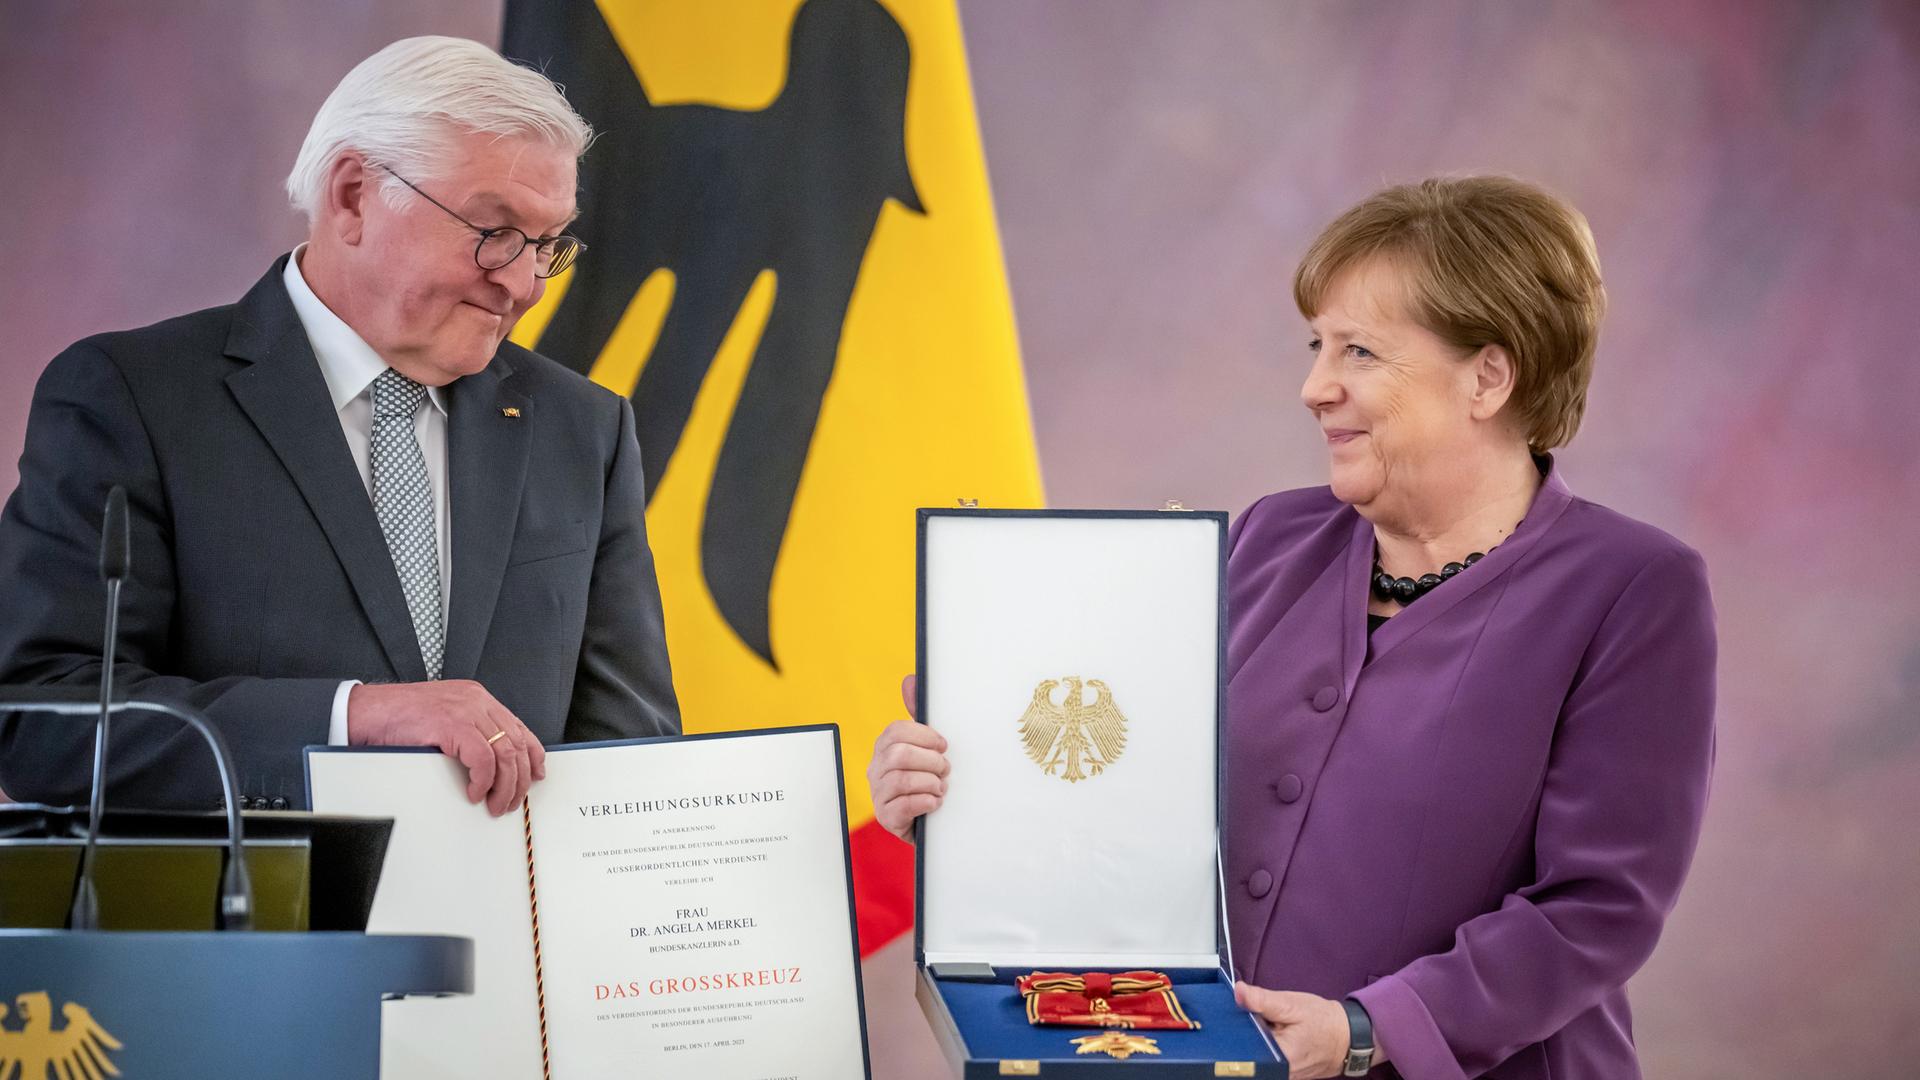 Bundes-Präsident Steinmeier und die früheren Bundes-Kanzlerin Angela Merkel. Er überreicht ihr das Groß-Kreuz.